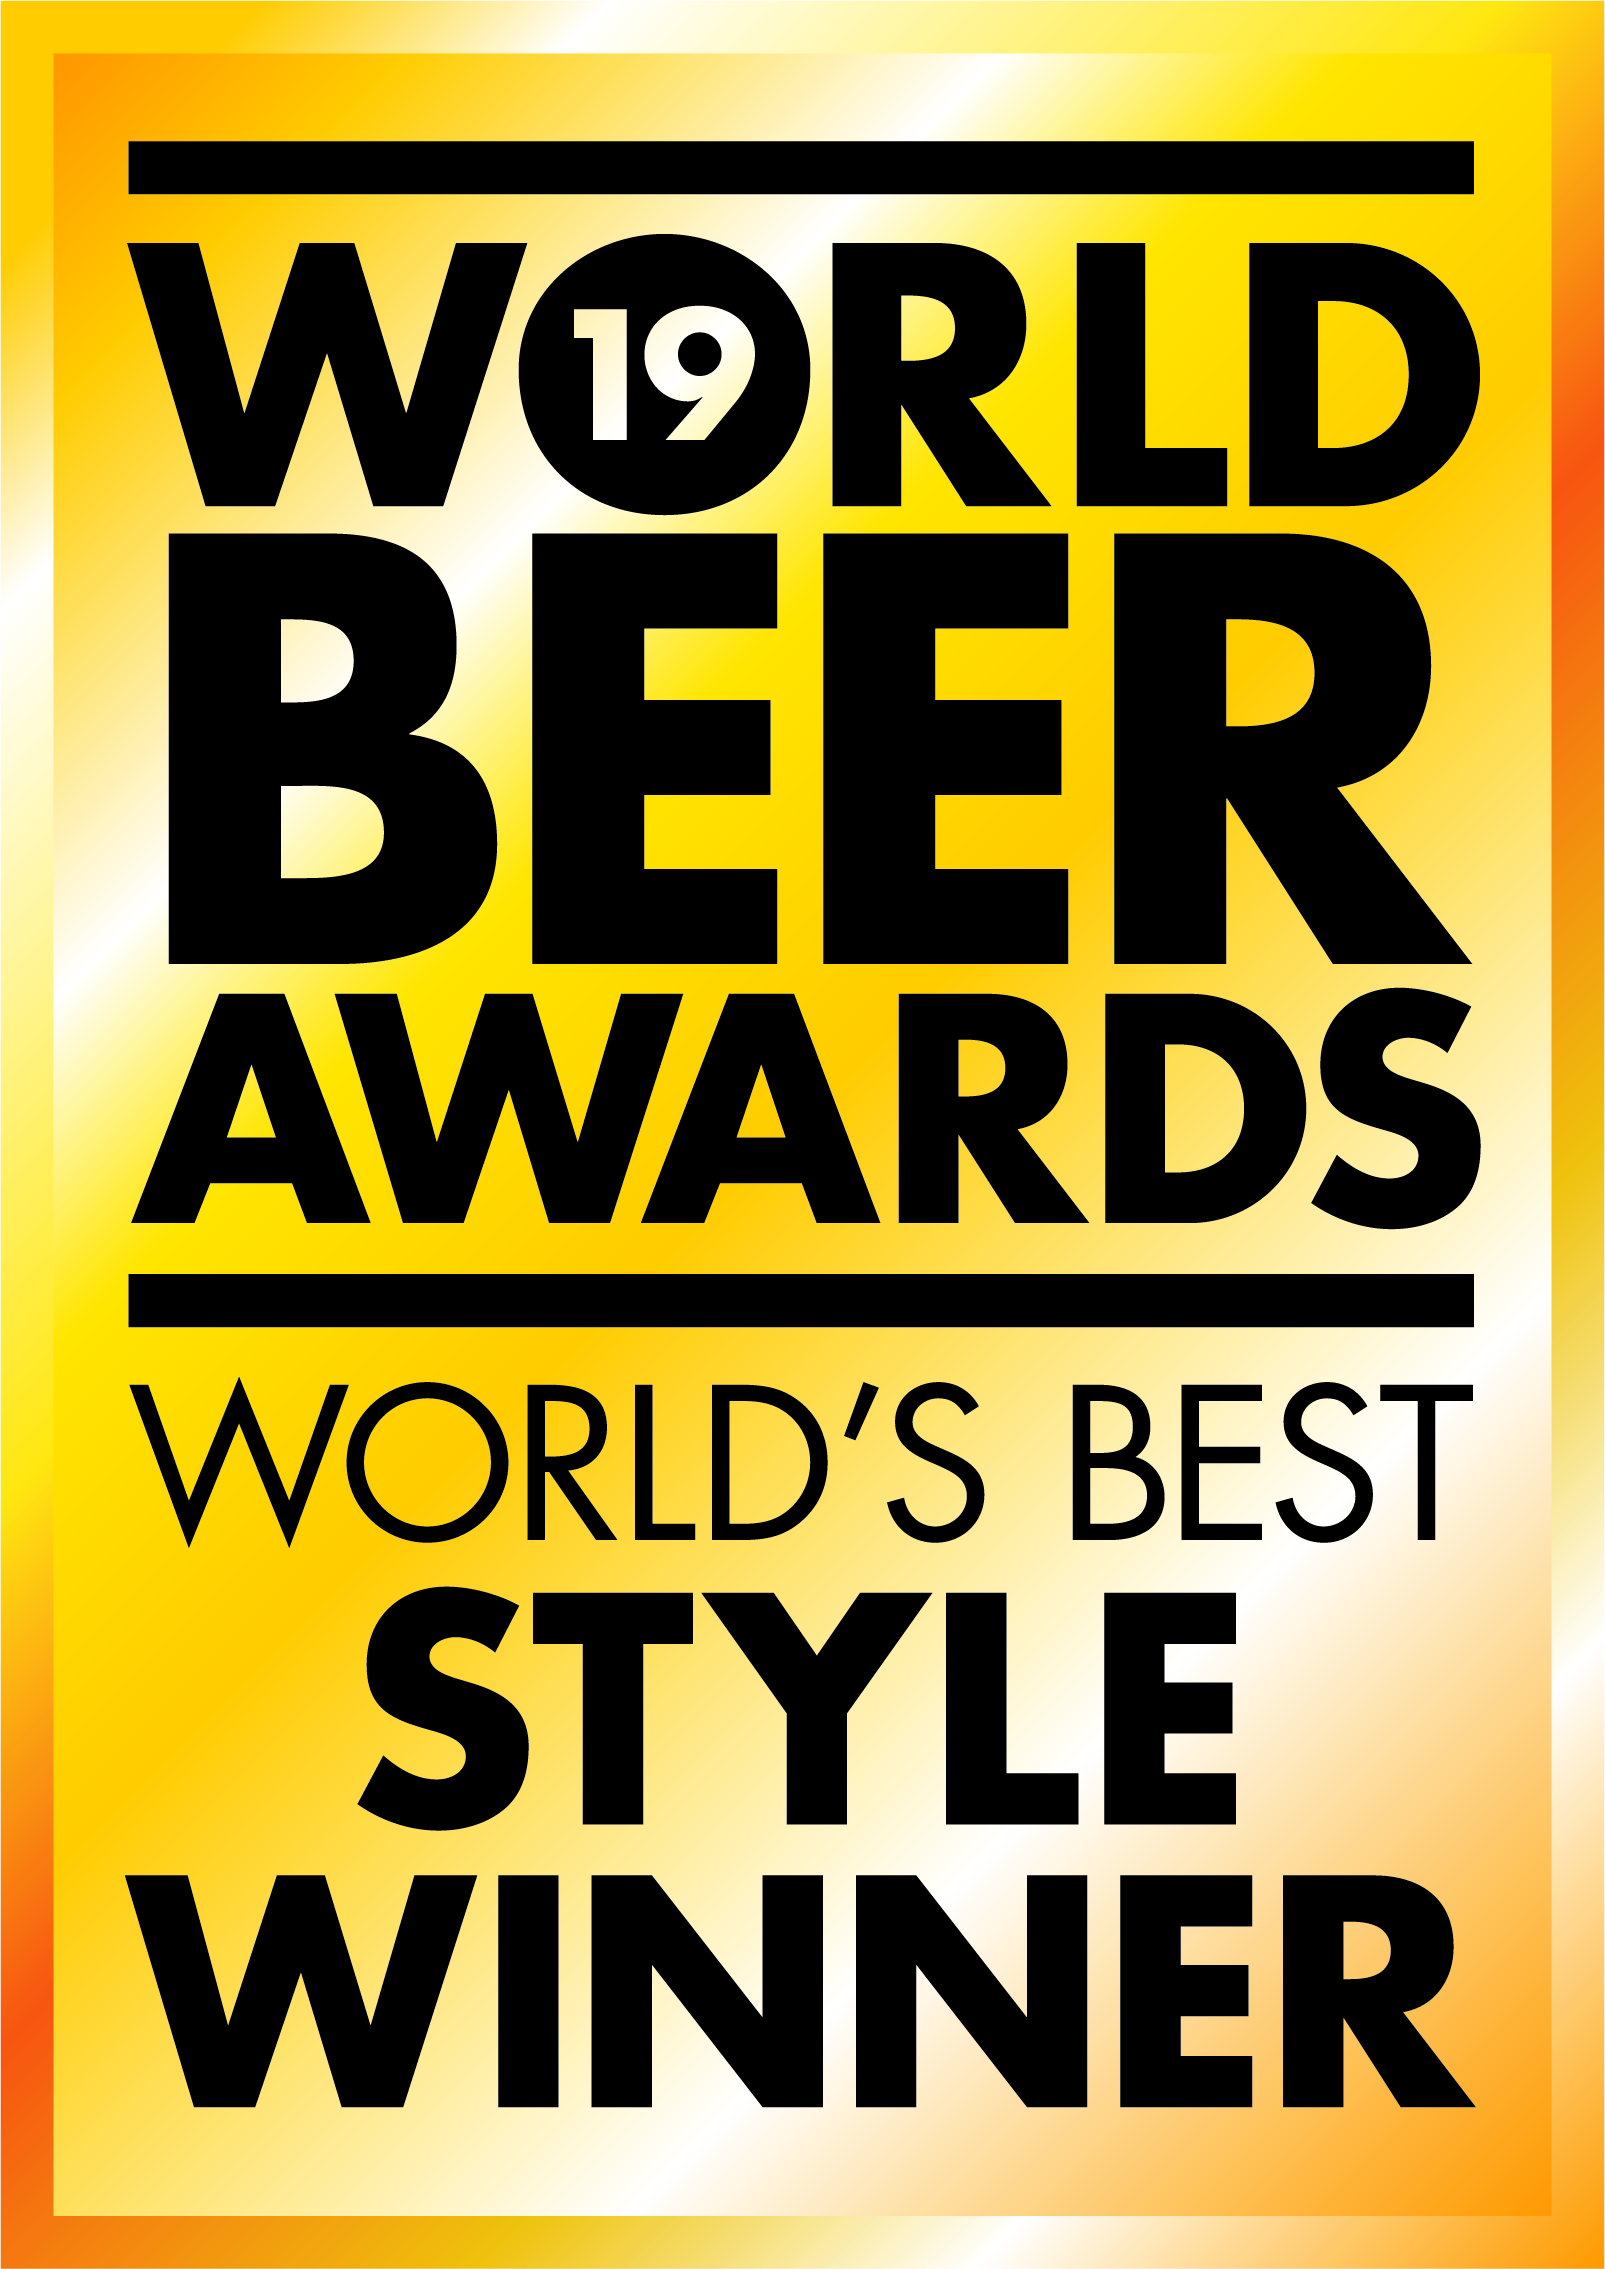 Word Beer Award 2019 - Meilleure bière brune du monde